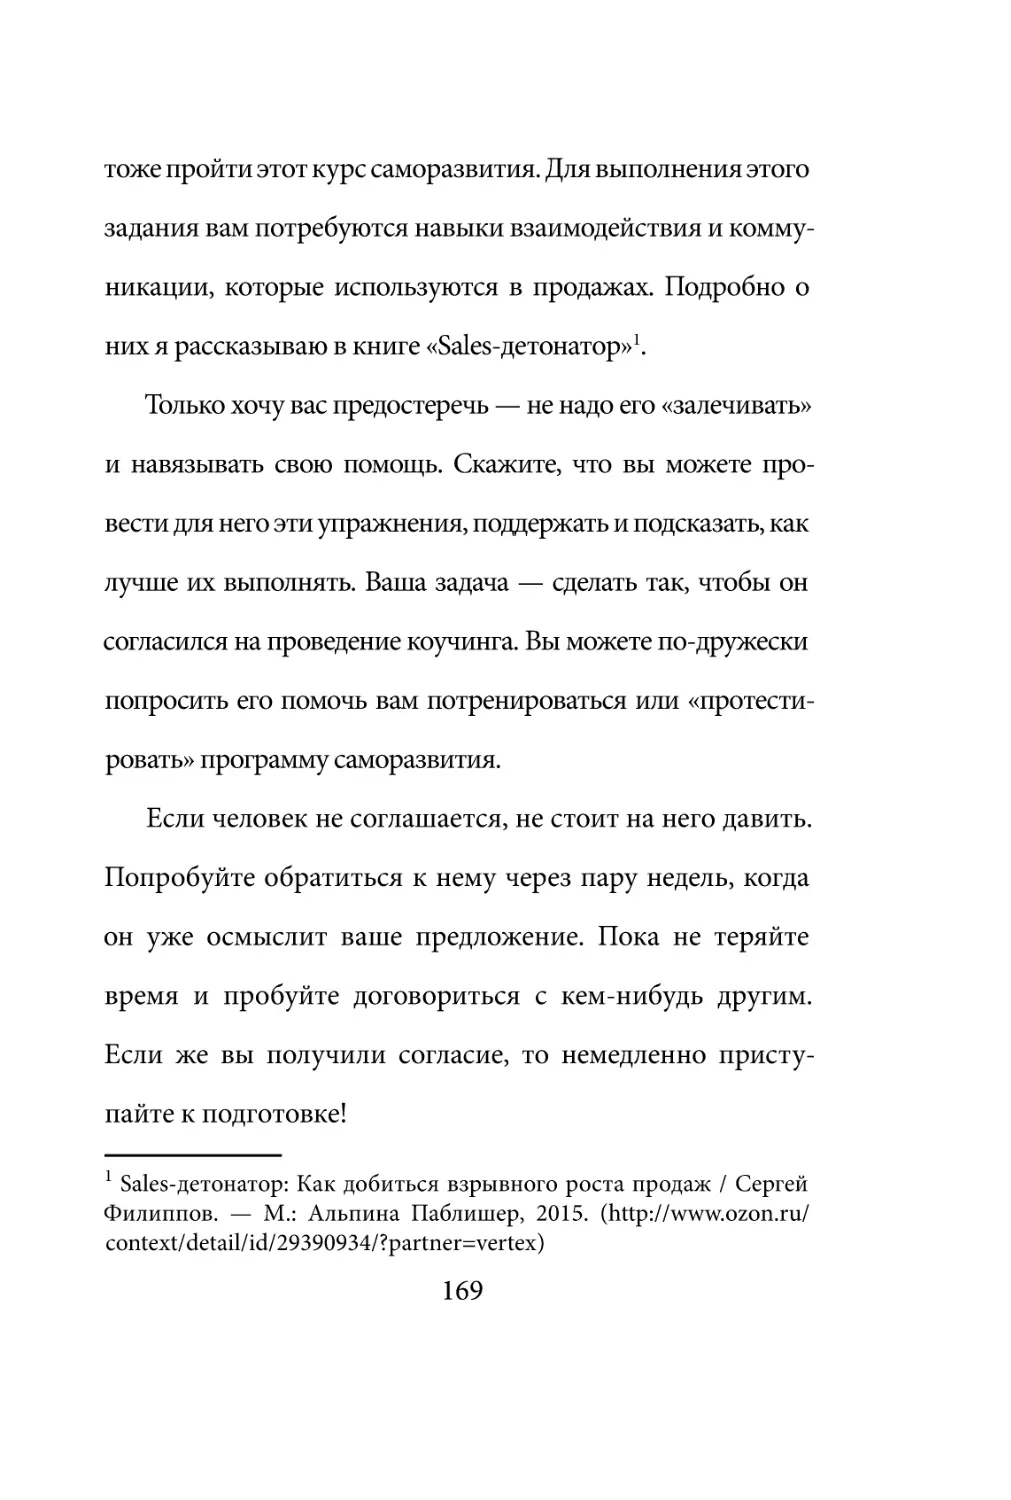 Sergey_Filippov_Dnevnik_samorazvitia_Evolyutsia_Vnutrennego_Sostoyania_169.pdf (p.169)